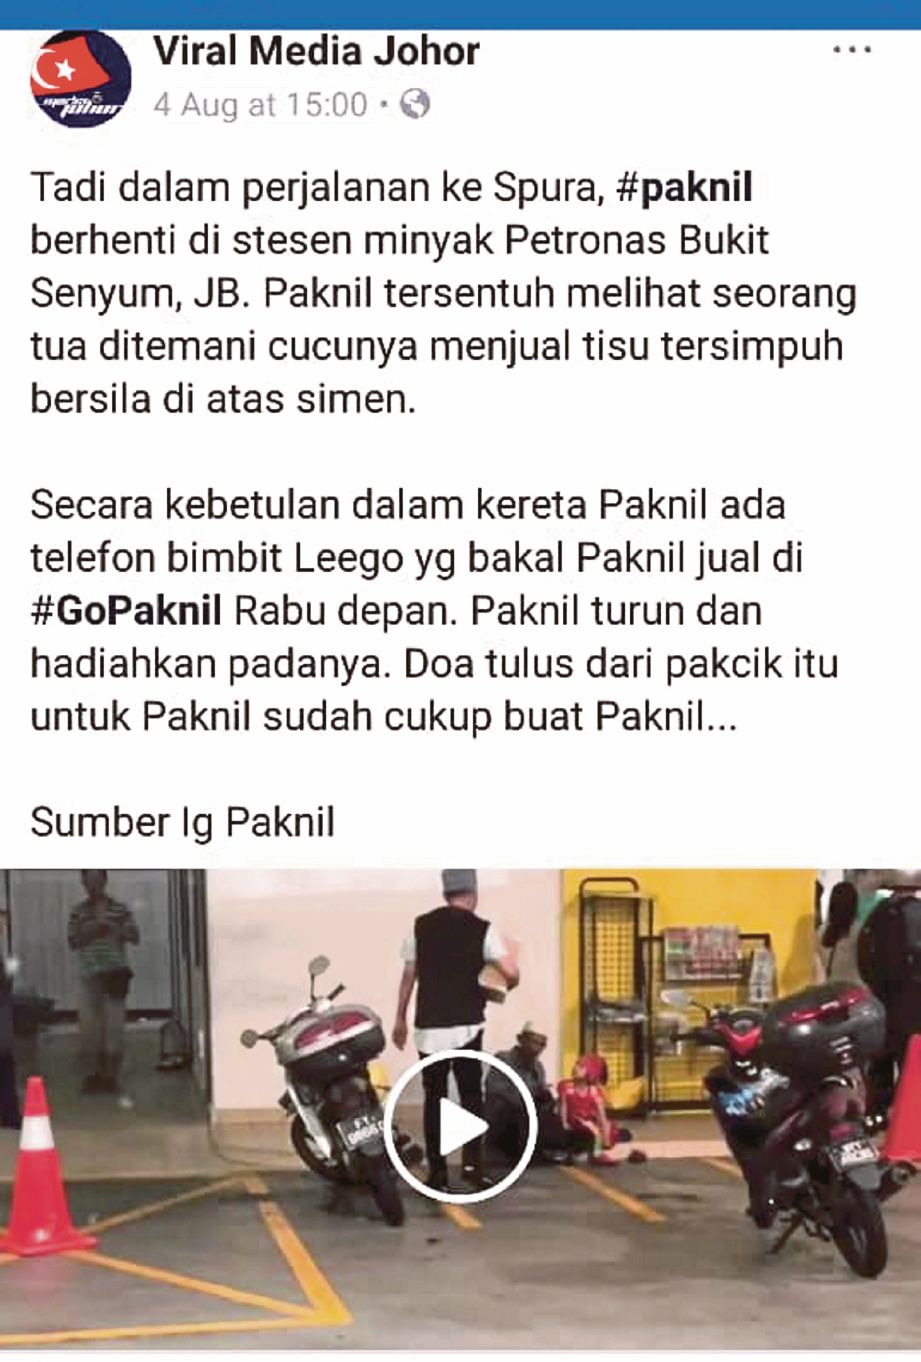 VIDEO Pak Nil dimuat naik FB Viral Media Johor.